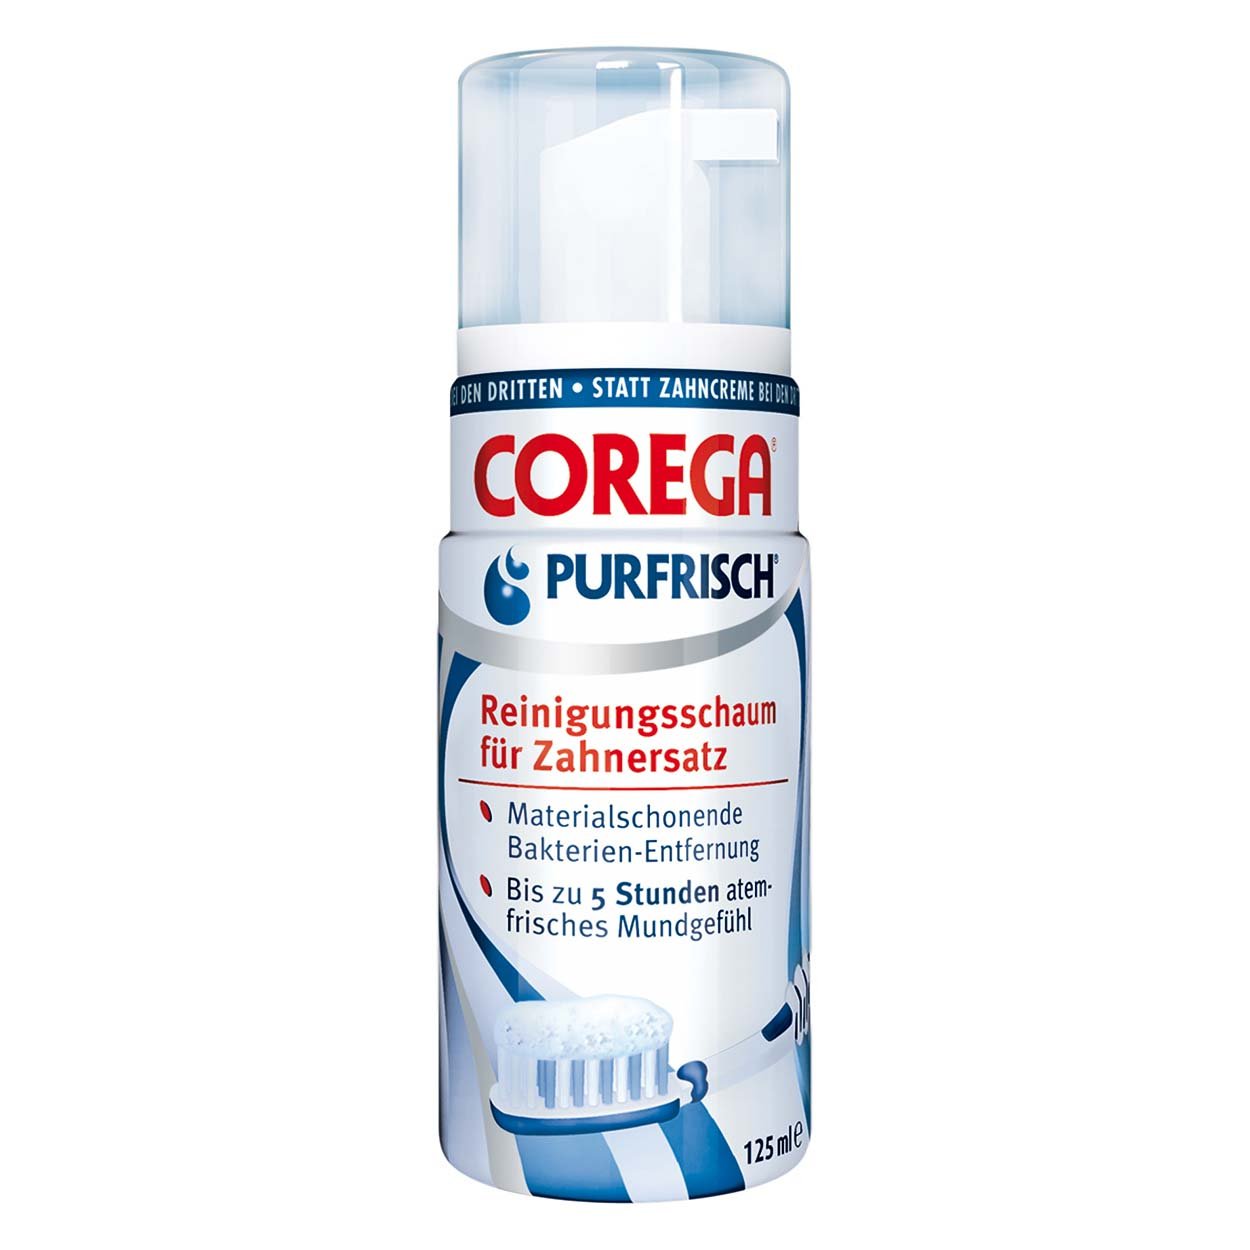 Corega Purfrisch Reinigungsschaum 125ml, 4er Pack (4x 125ml)